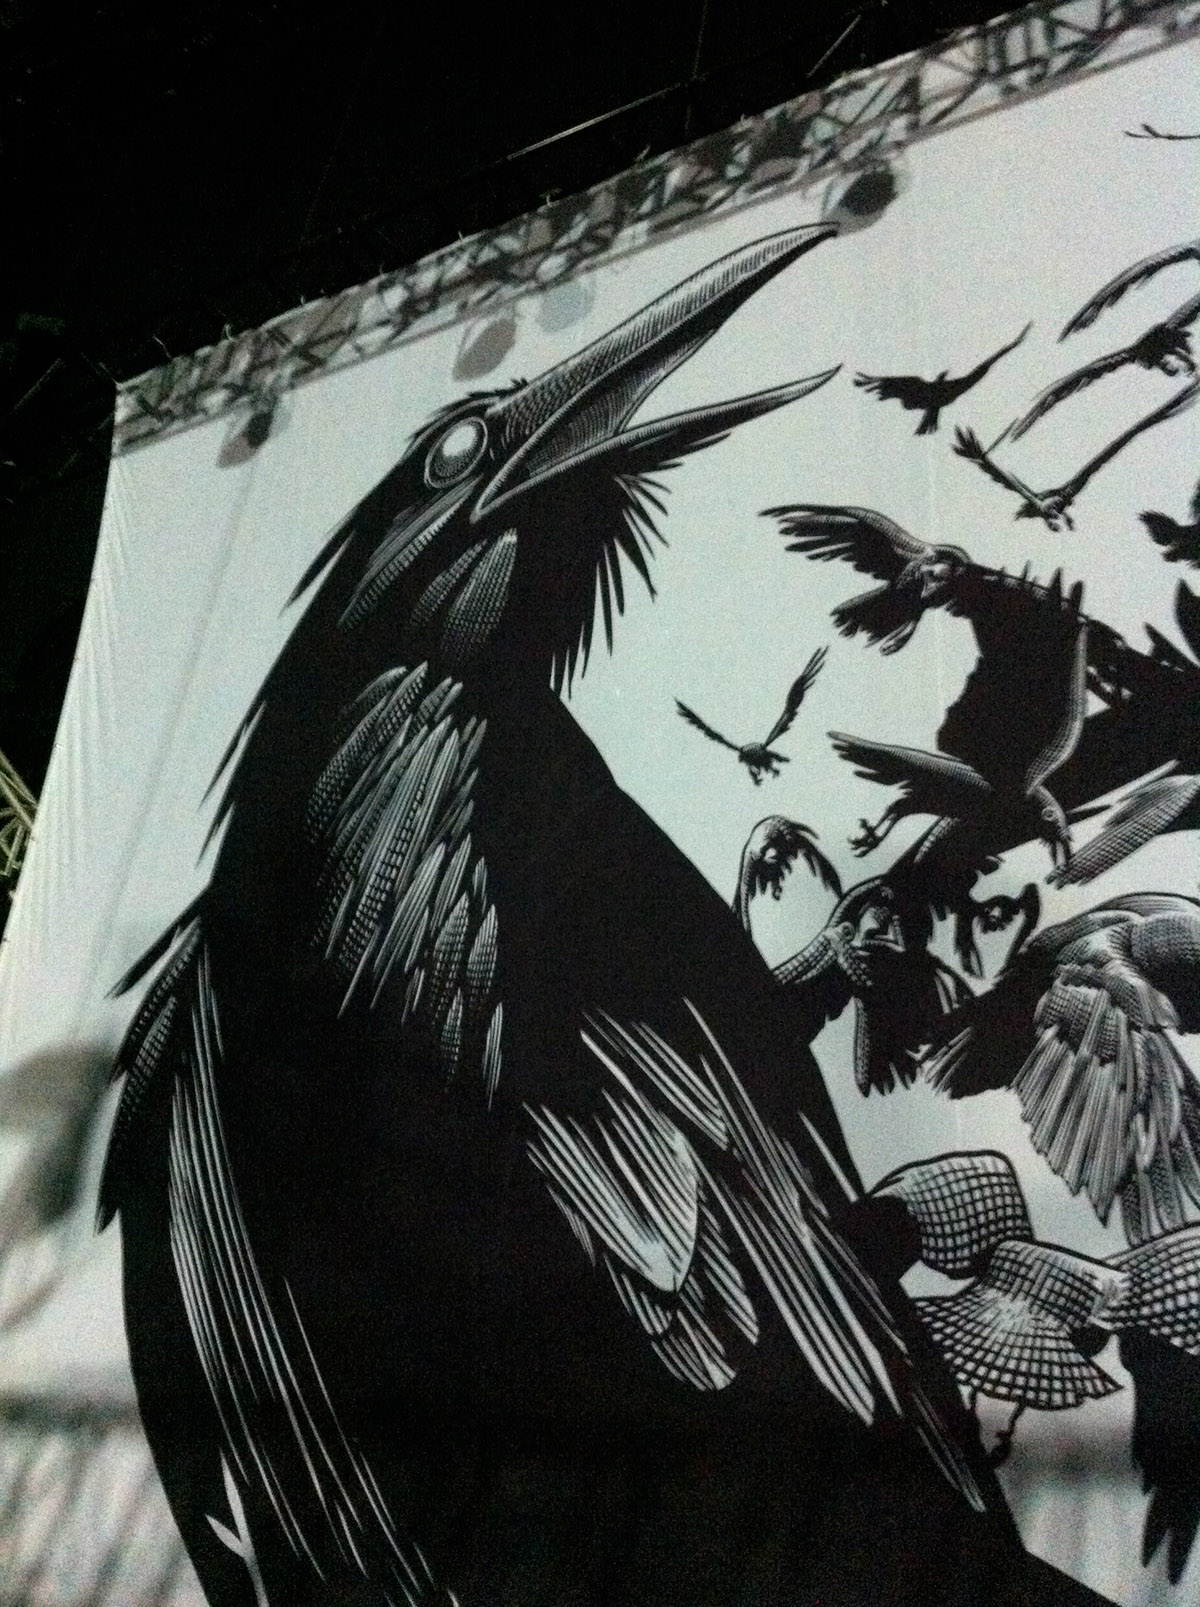 crowes crow concert punk rock egraving crosshatching ink tinta grabado cuervos concierto escenografia